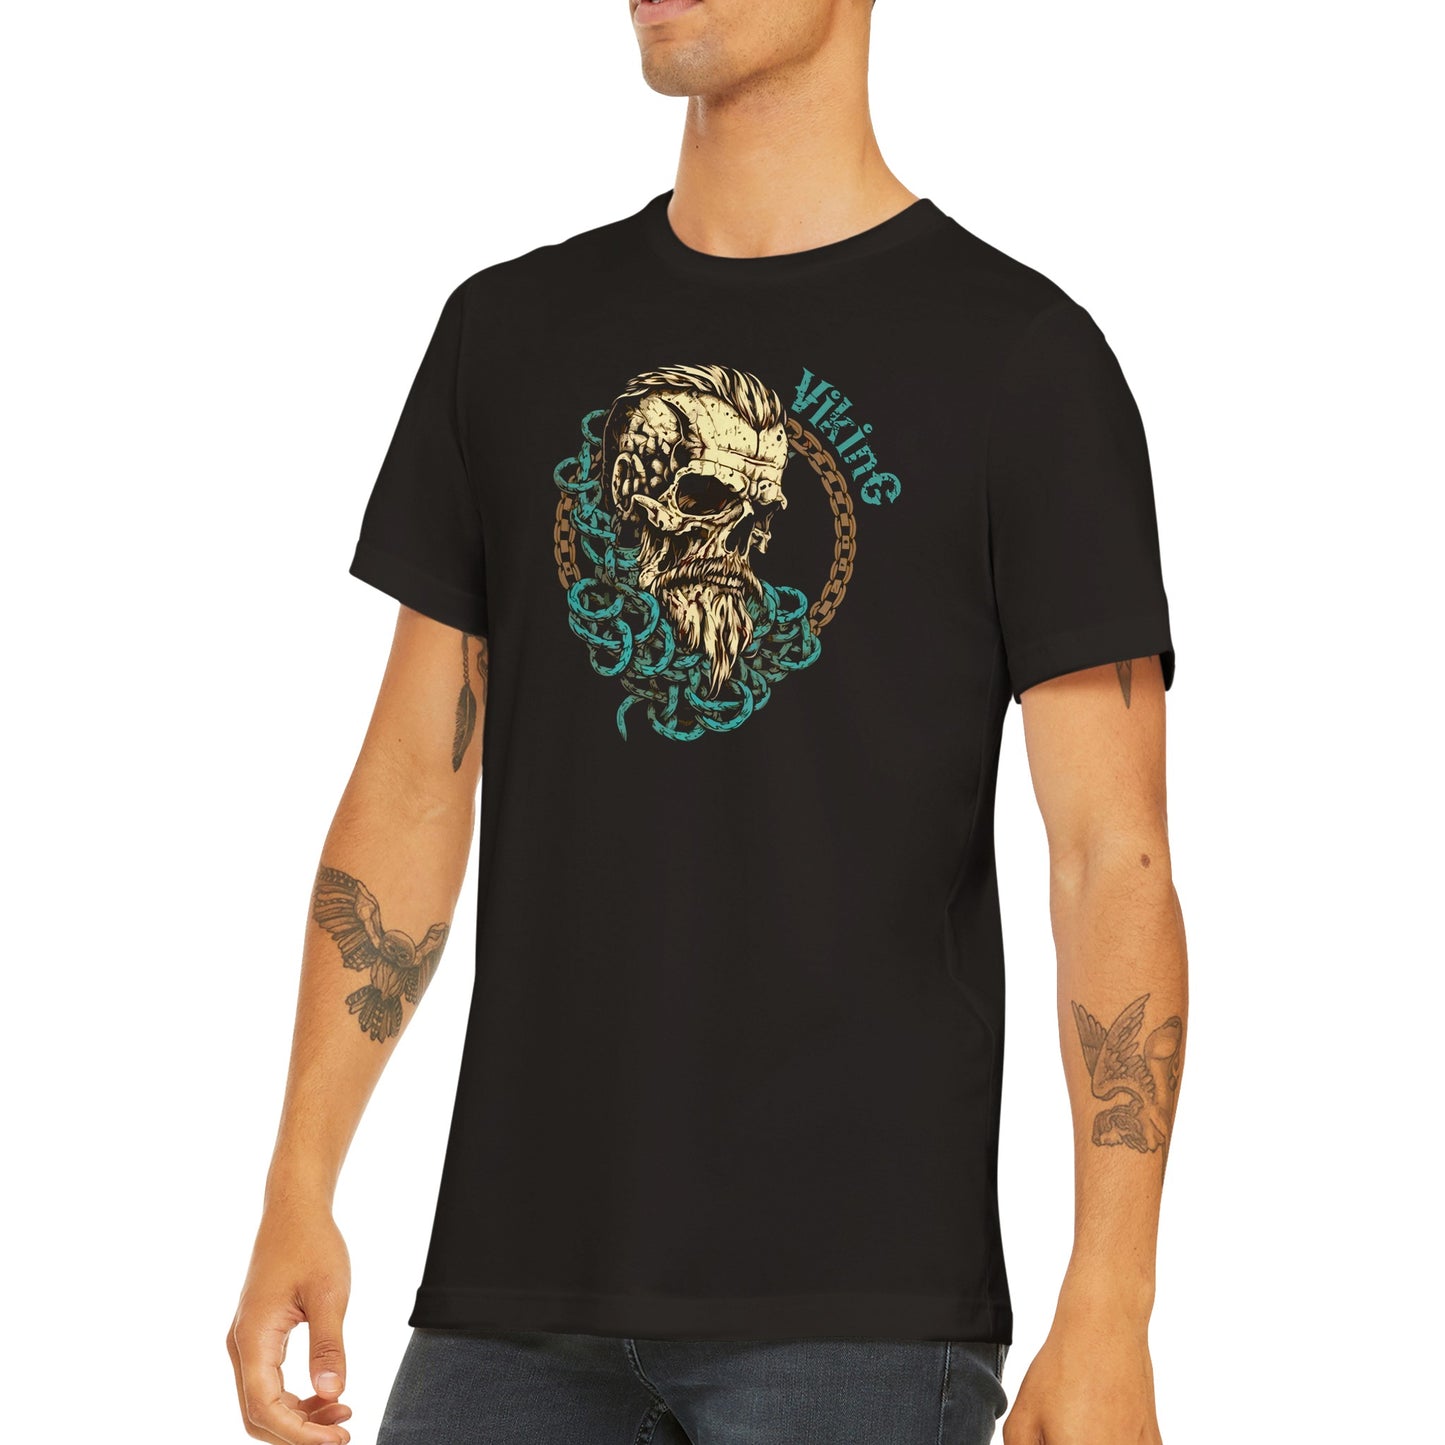 Viking Skull T-shirt